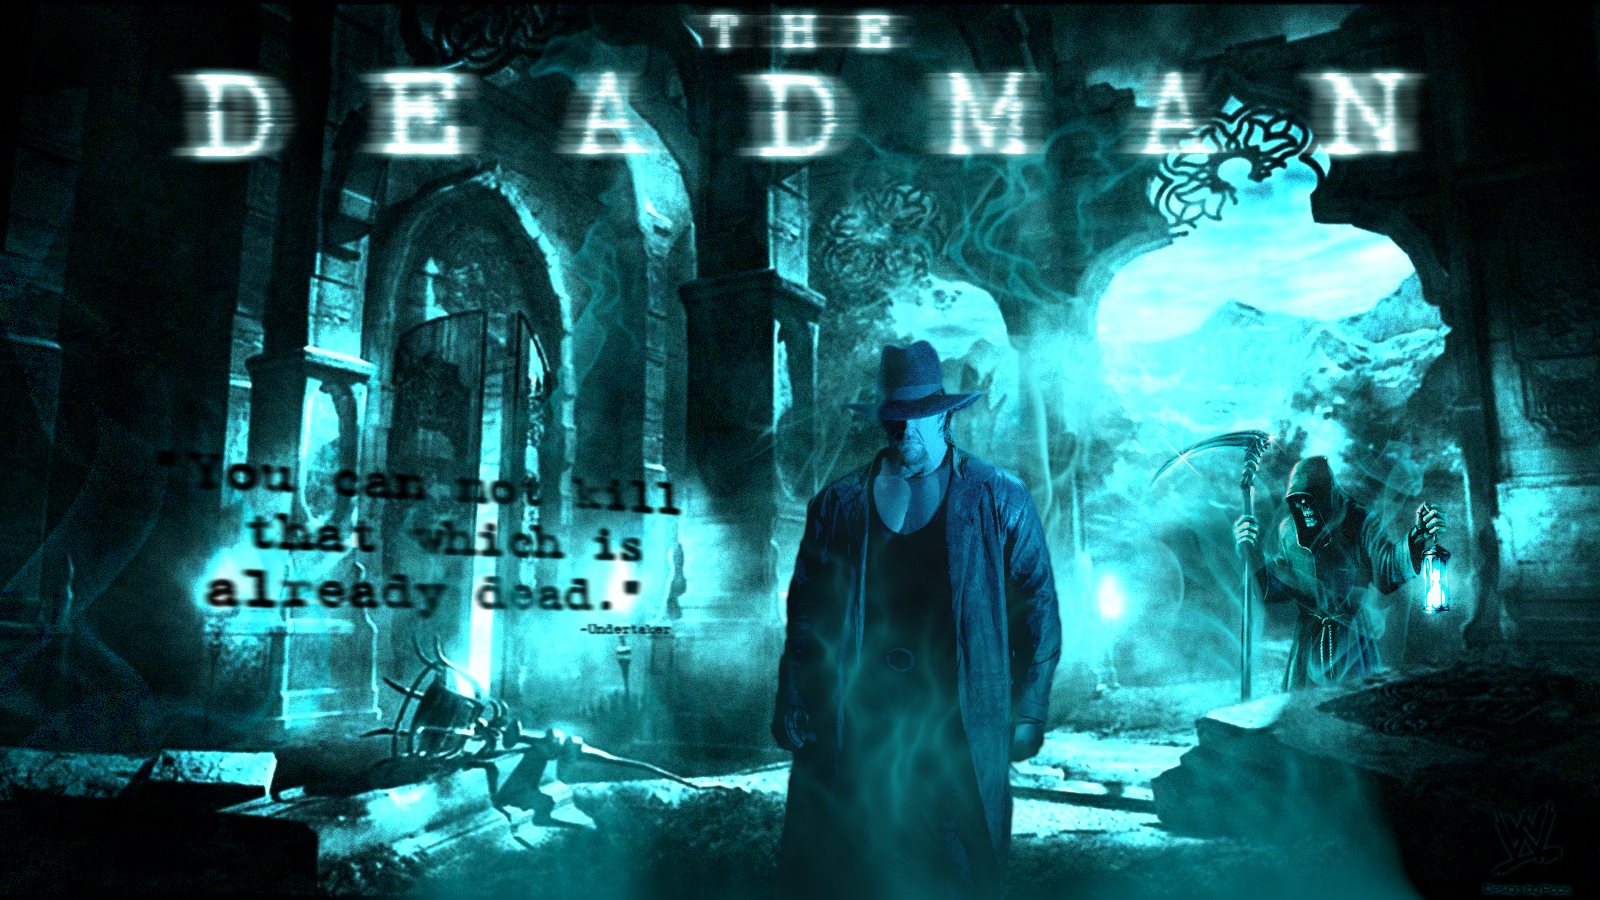 Deadman-undertaker-17528530-1600-900